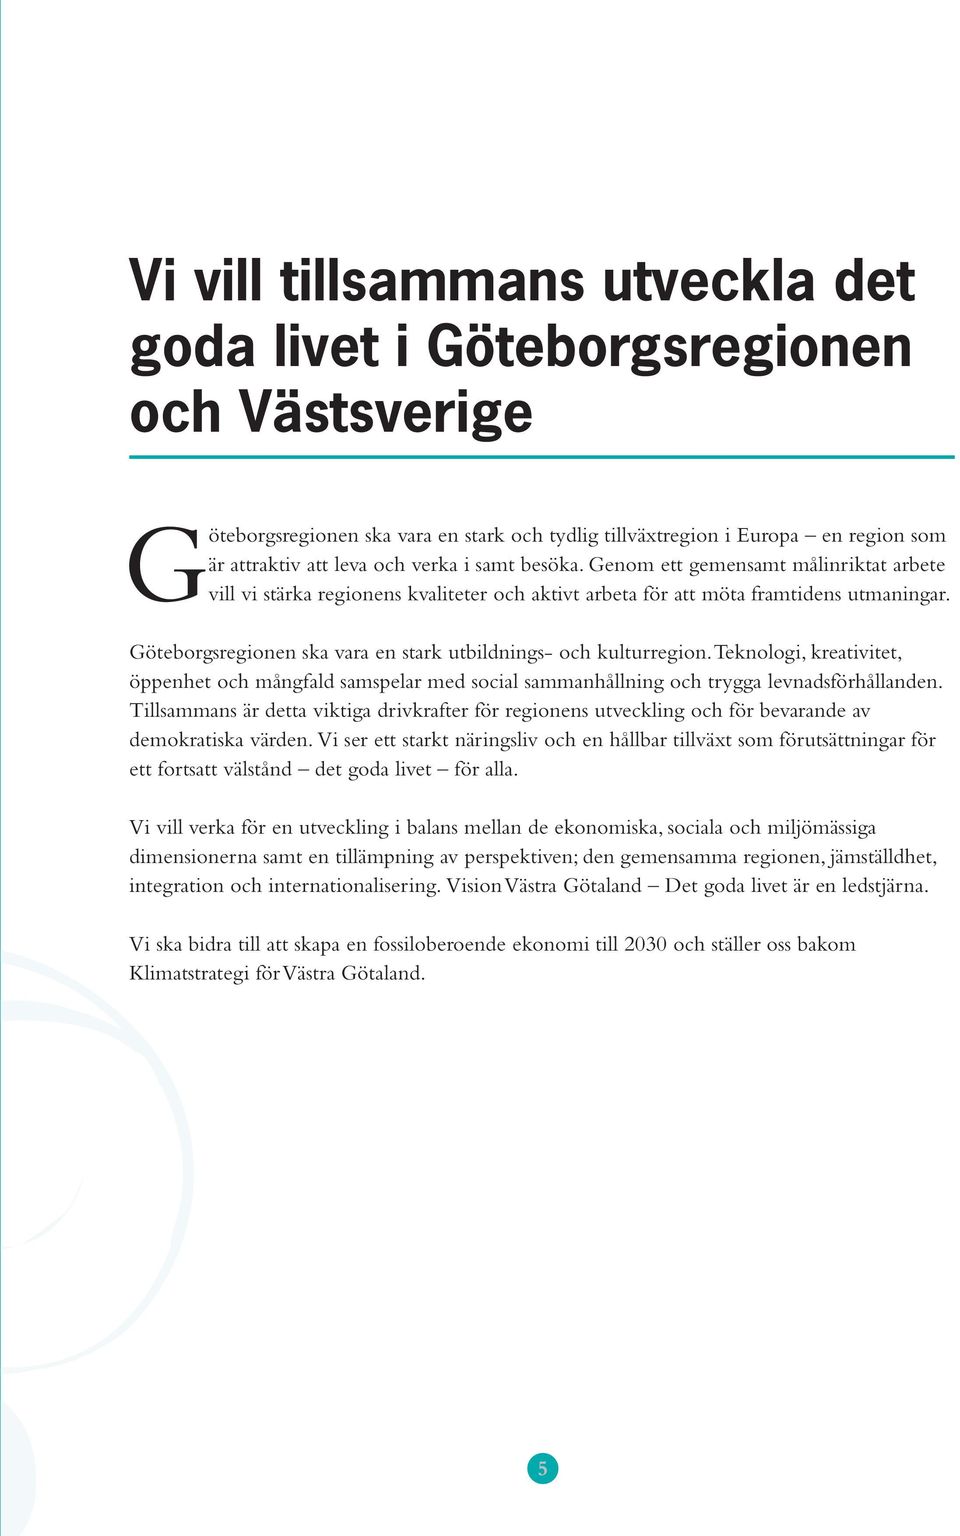 Göteborgsregionen ska vara en stark utbildnings- och kulturregion. Teknologi, kreativitet, öppenhet och mångfald samspelar med social sammanhållning och trygga levnadsförhållanden.